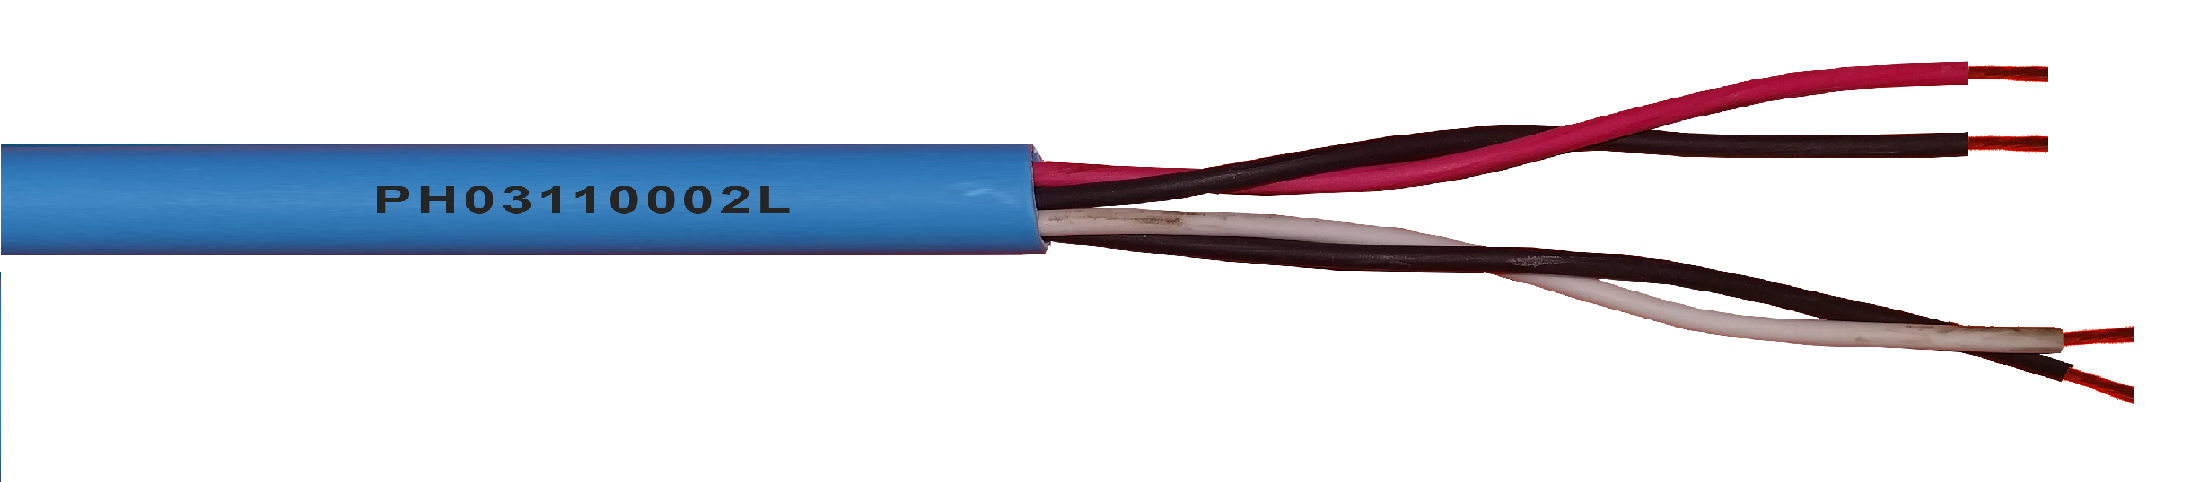 Cable MA PF 2 x 2 x 1 NH Z1Z1 (AS), Cubierta AZUL Libre halógenos